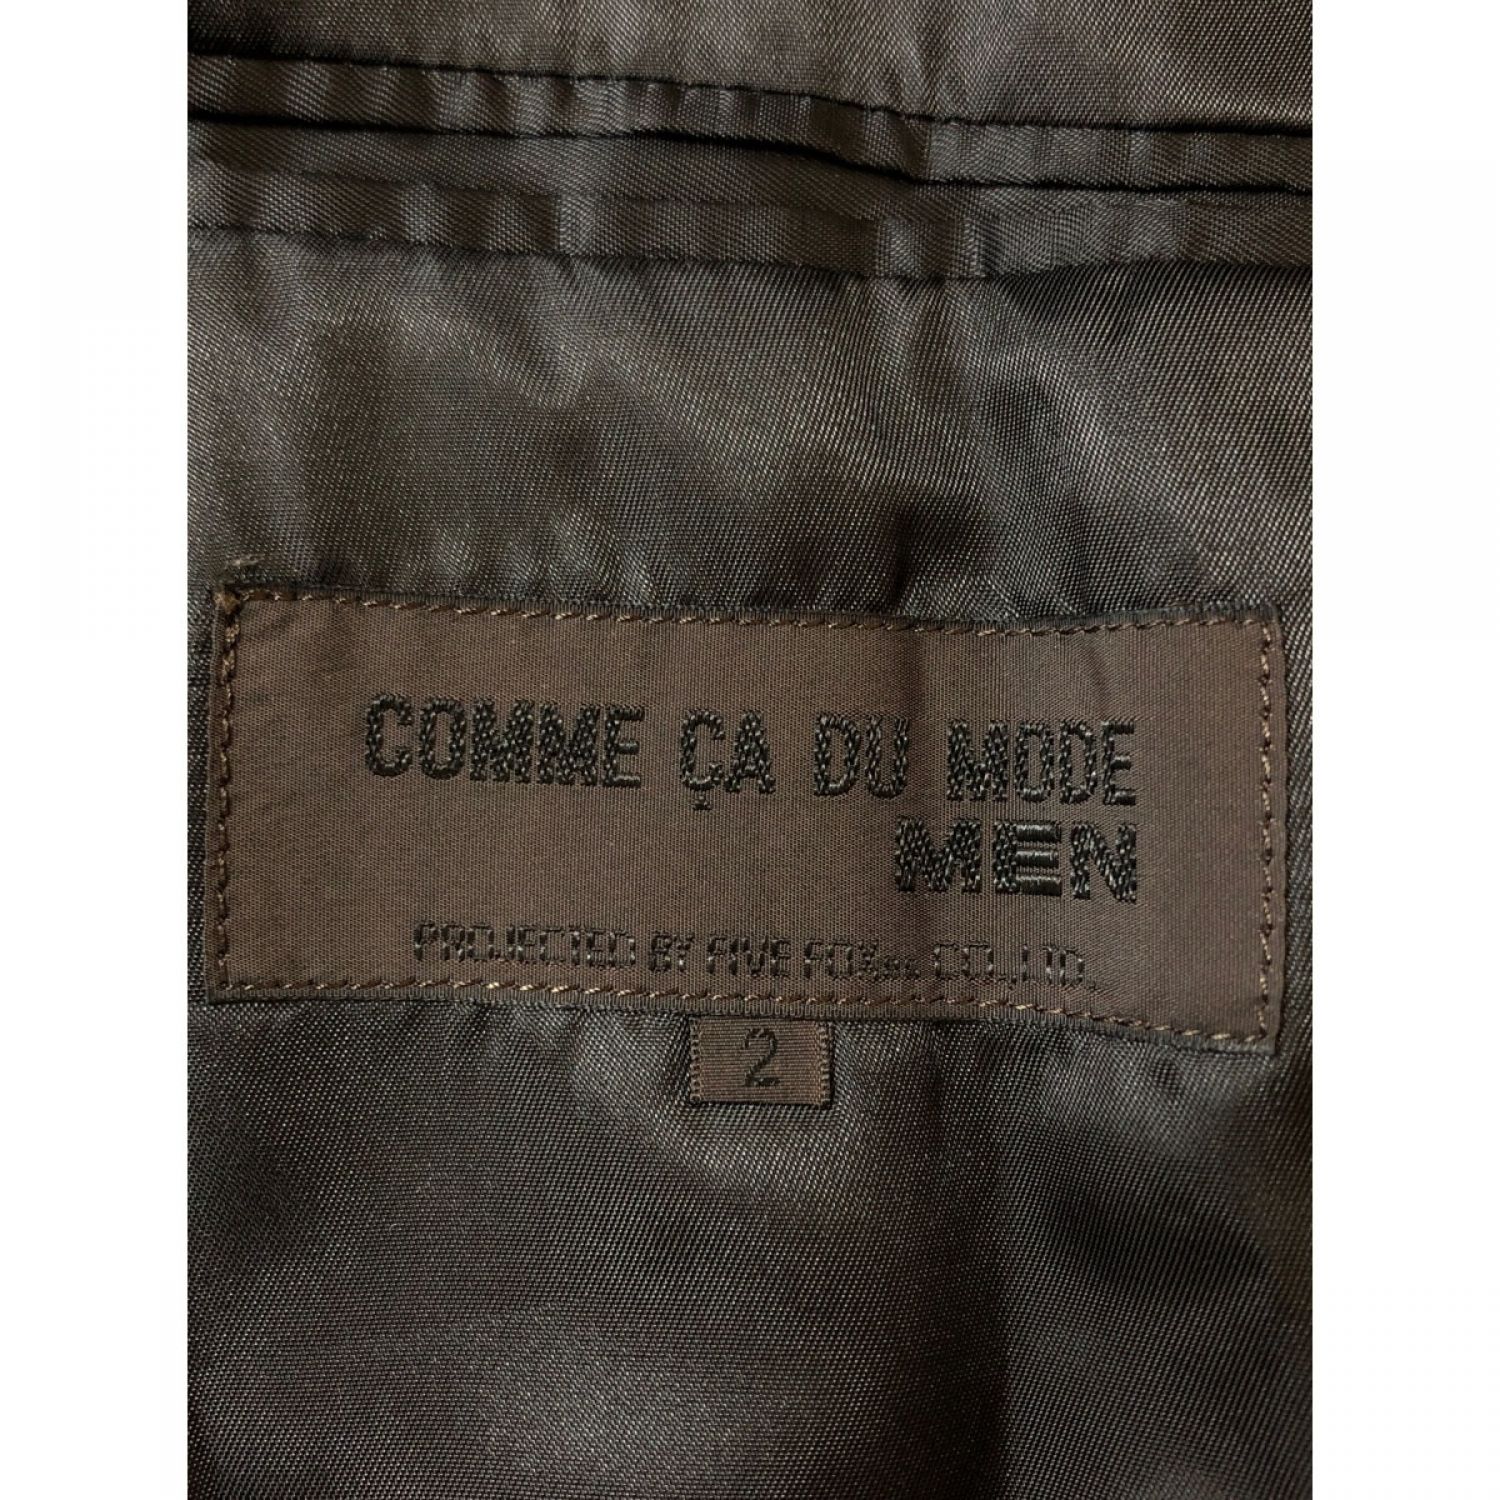 COMME CA DU MODE MEN / コムサデモード | カウレザー フラップ付き ステンカラー ベルテッド コート | 3 | ブラック | メンズ